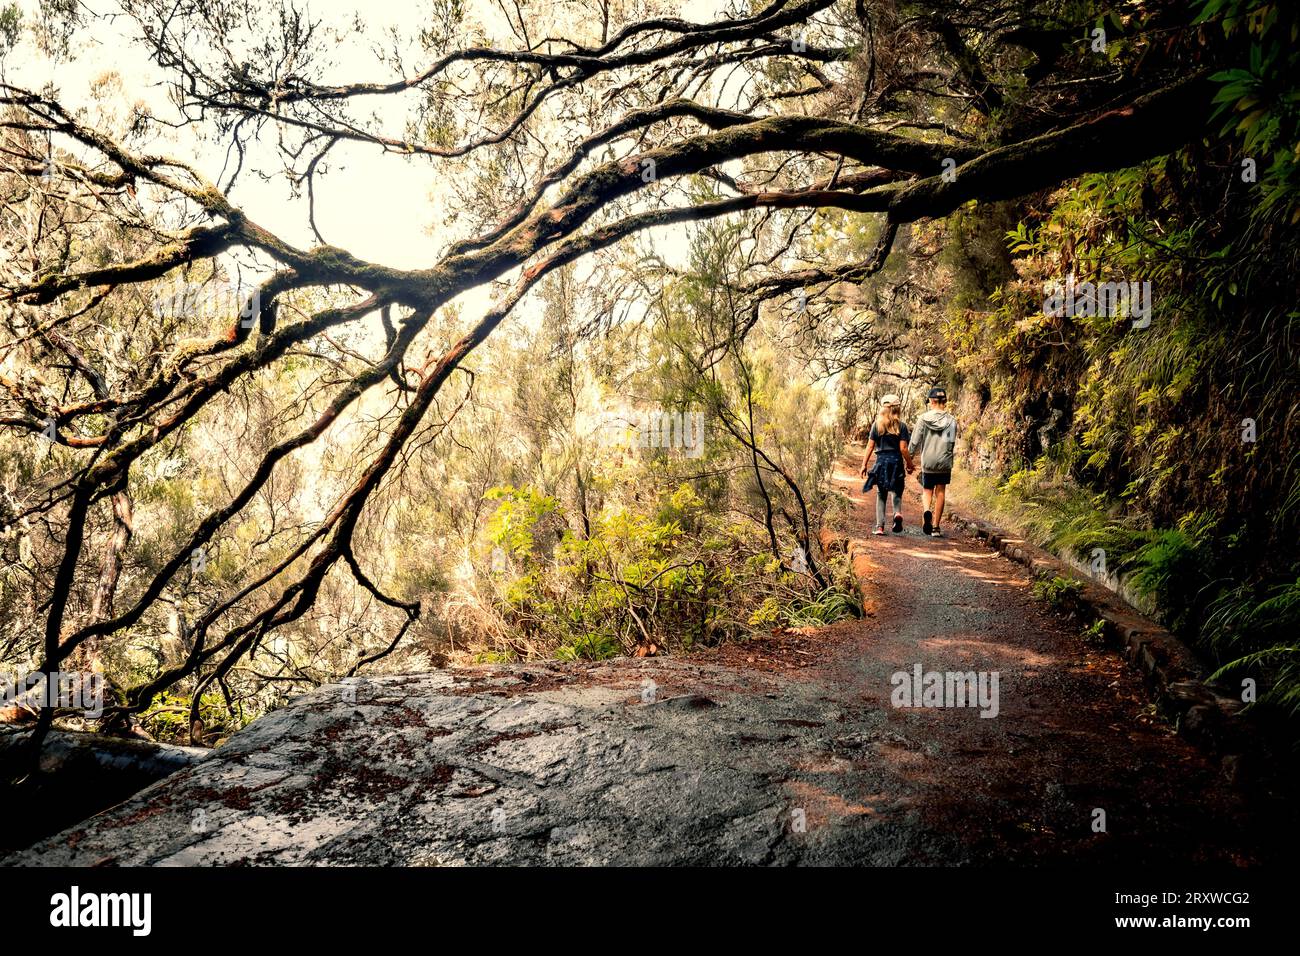 Vue panoramique de deux jeunes enfants, frères et sœurs, marchant main dans la main sous un grand arbre en surplomb, sentier de randonnée Levada das 25 Fontes, Madère, Portugal Banque D'Images